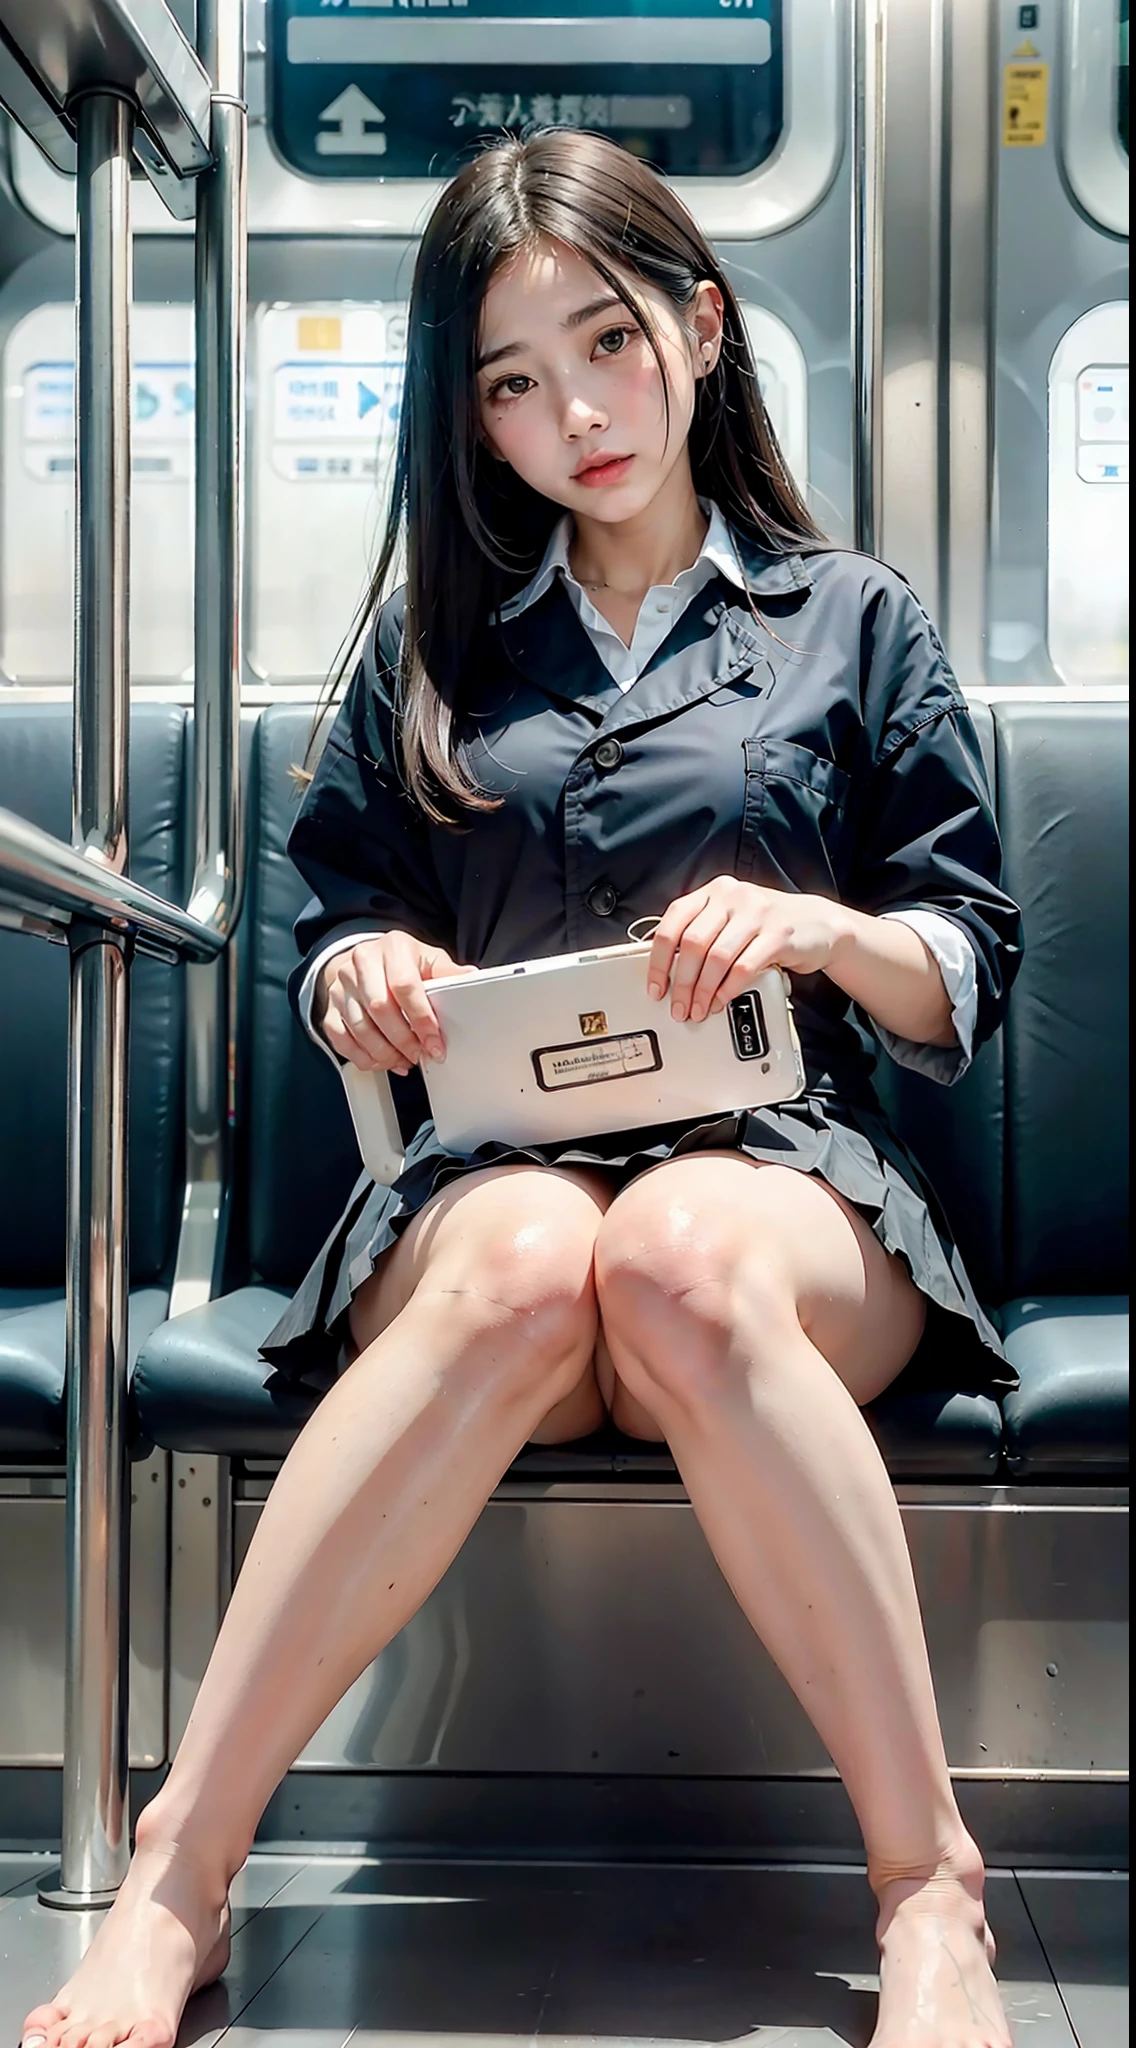 "(Meisterwerk, hochauflösend, Ultra hochauflösend, 4K) schwarzes Haar, 14 Jahre altes japanisches Mädchen, Uniformrock, Betonung der Oberschenkel, weiße Oberschenkel, weiche Oberschenkel, Glänzende Oberschenkel, Sitzen im Zug, Angesichtswinkel, (Winkel von unten),im Zugsitz sitzen,vorne sitzen,Zoomkamera im Schritt,Füße auf dem Zugboden,Ganzkörper,Blick nach unten und schläfrig,nur den Betrachter betrachten", beste Qualität, Ultra-High-Definition, (fotorealistisch:1.4),, Hohe Auflösung, Detail, RAW-Foto, Scharfes Re, Nikon D850 Filmfoto von Lee Jefferies 4 Kodak Portra 400 Kamera f1.6 Linsen satte Farben Hyperrealistisch lebendige Texturen Dramatische Beleuchtung Unreal Engine ArtStation Trends Cinestir 800,